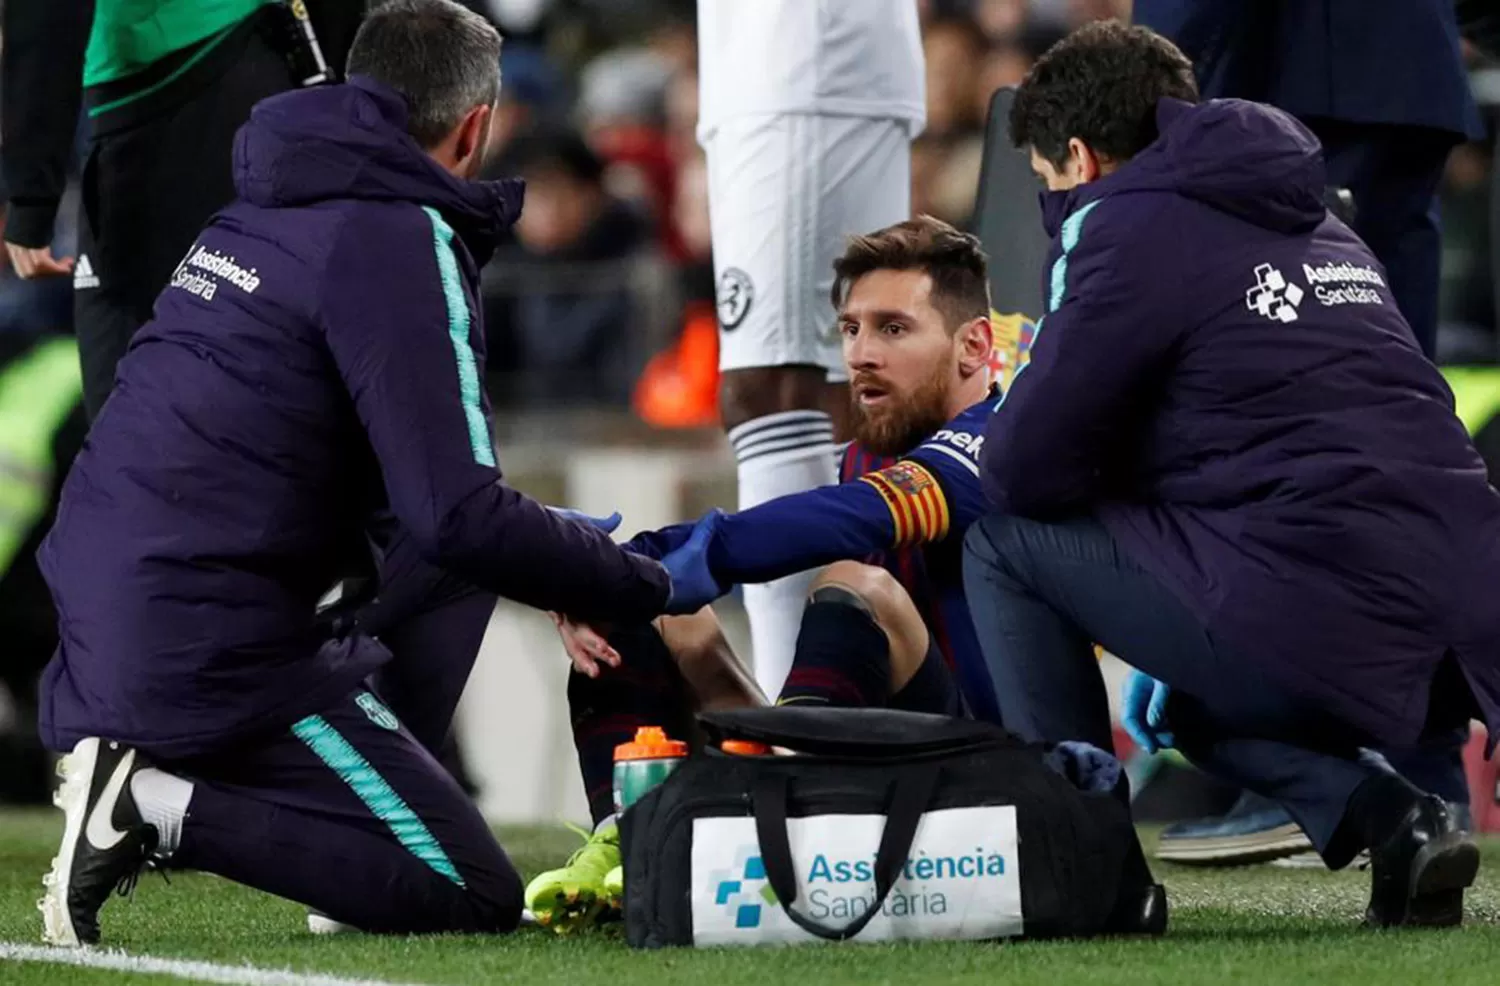 LESIONADO. Los médicos debieron atender a Messi.